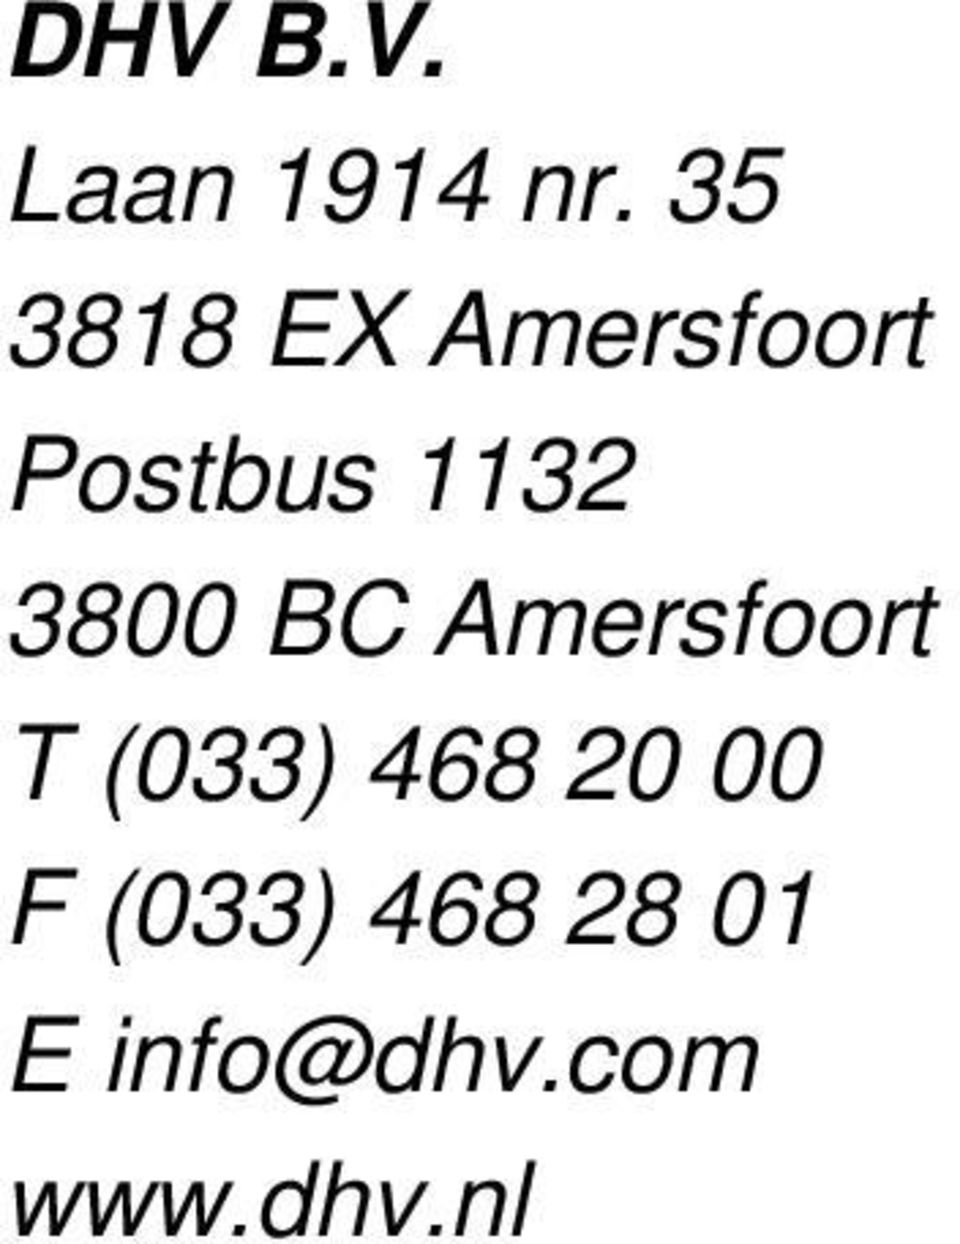 1132 3800 BC Amersfoort T (033)